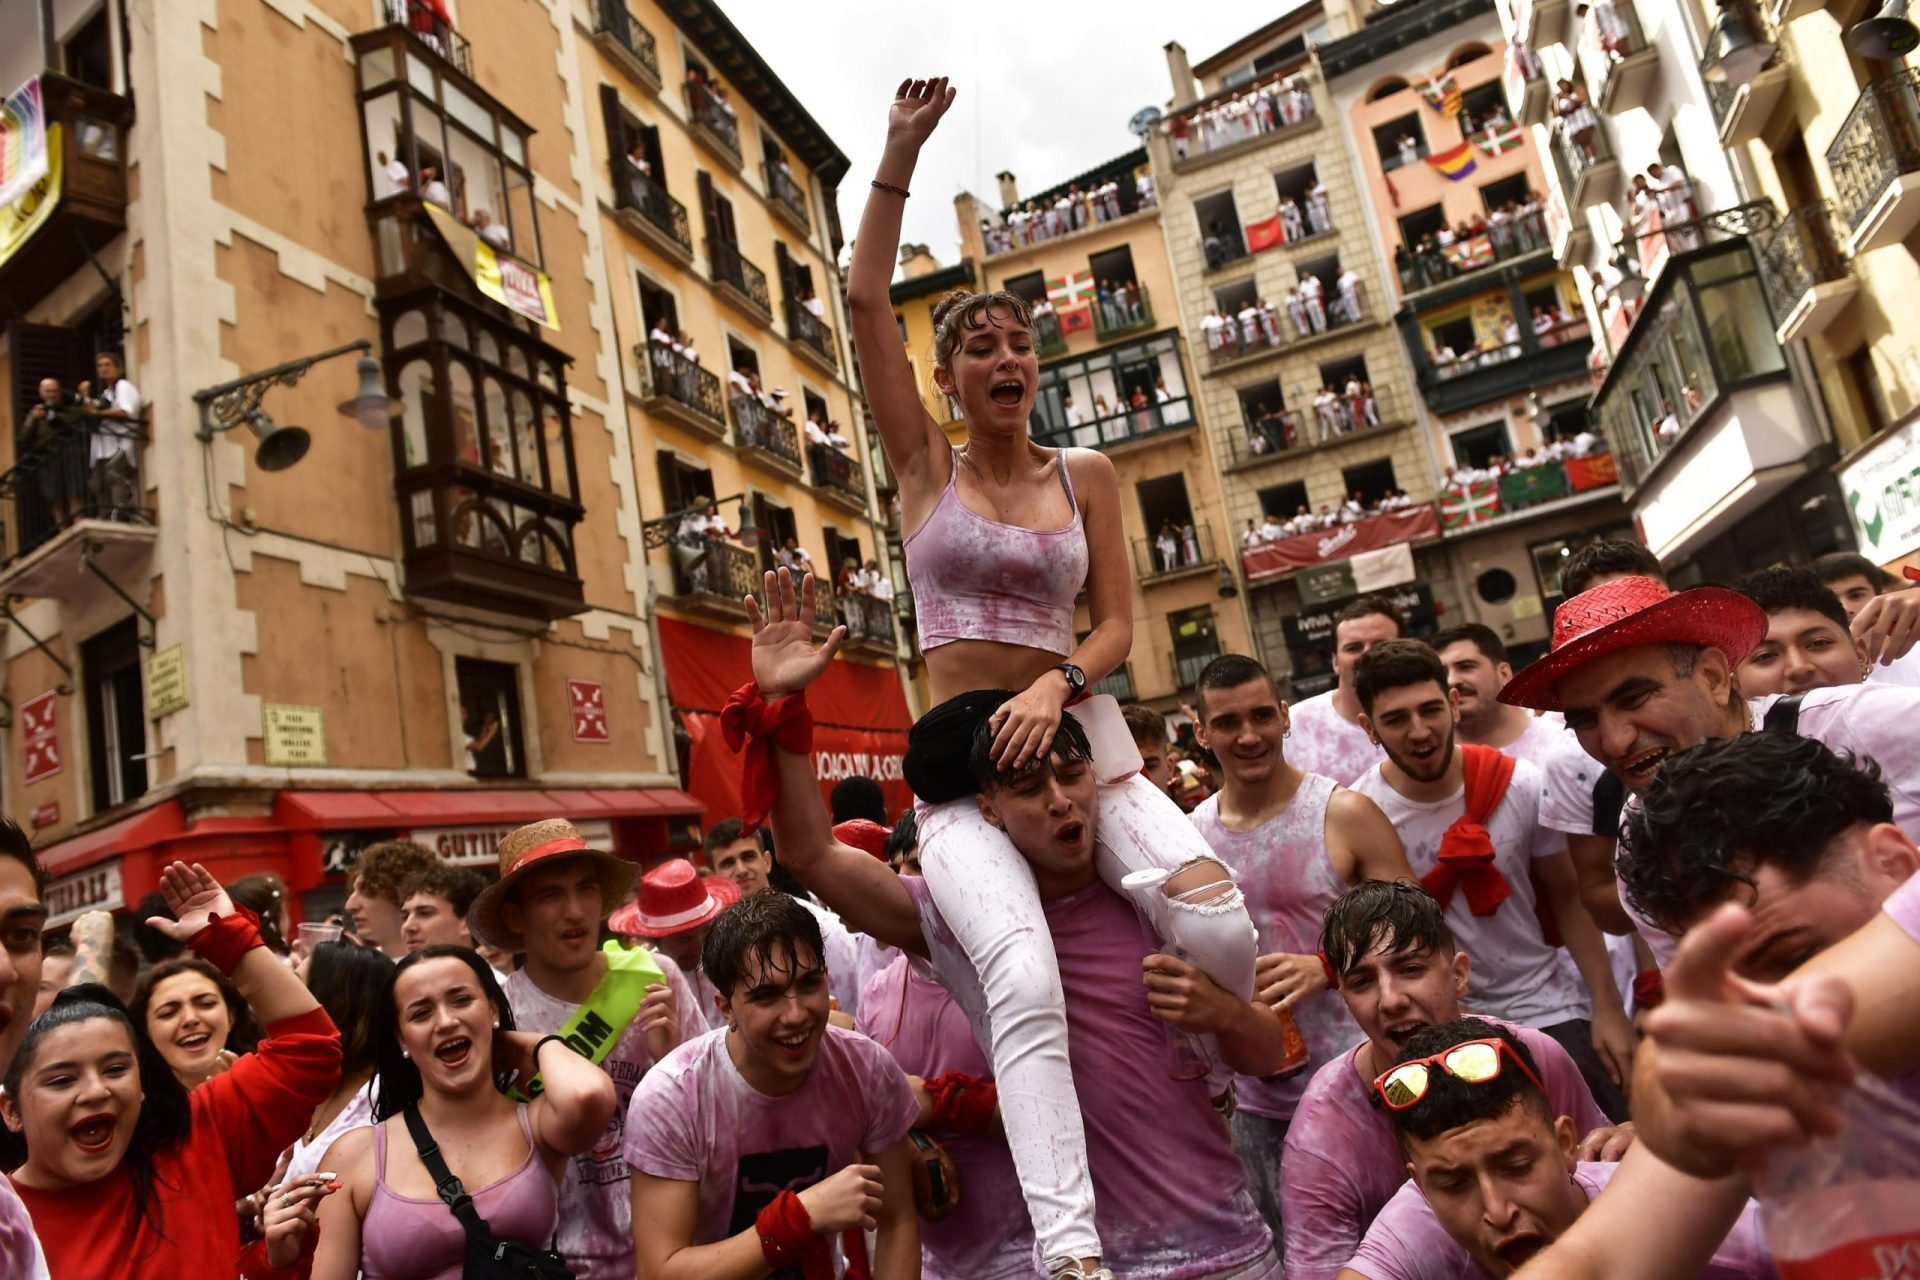 El famoso festival Bull Run de España regresa después de una pausa de 2 años